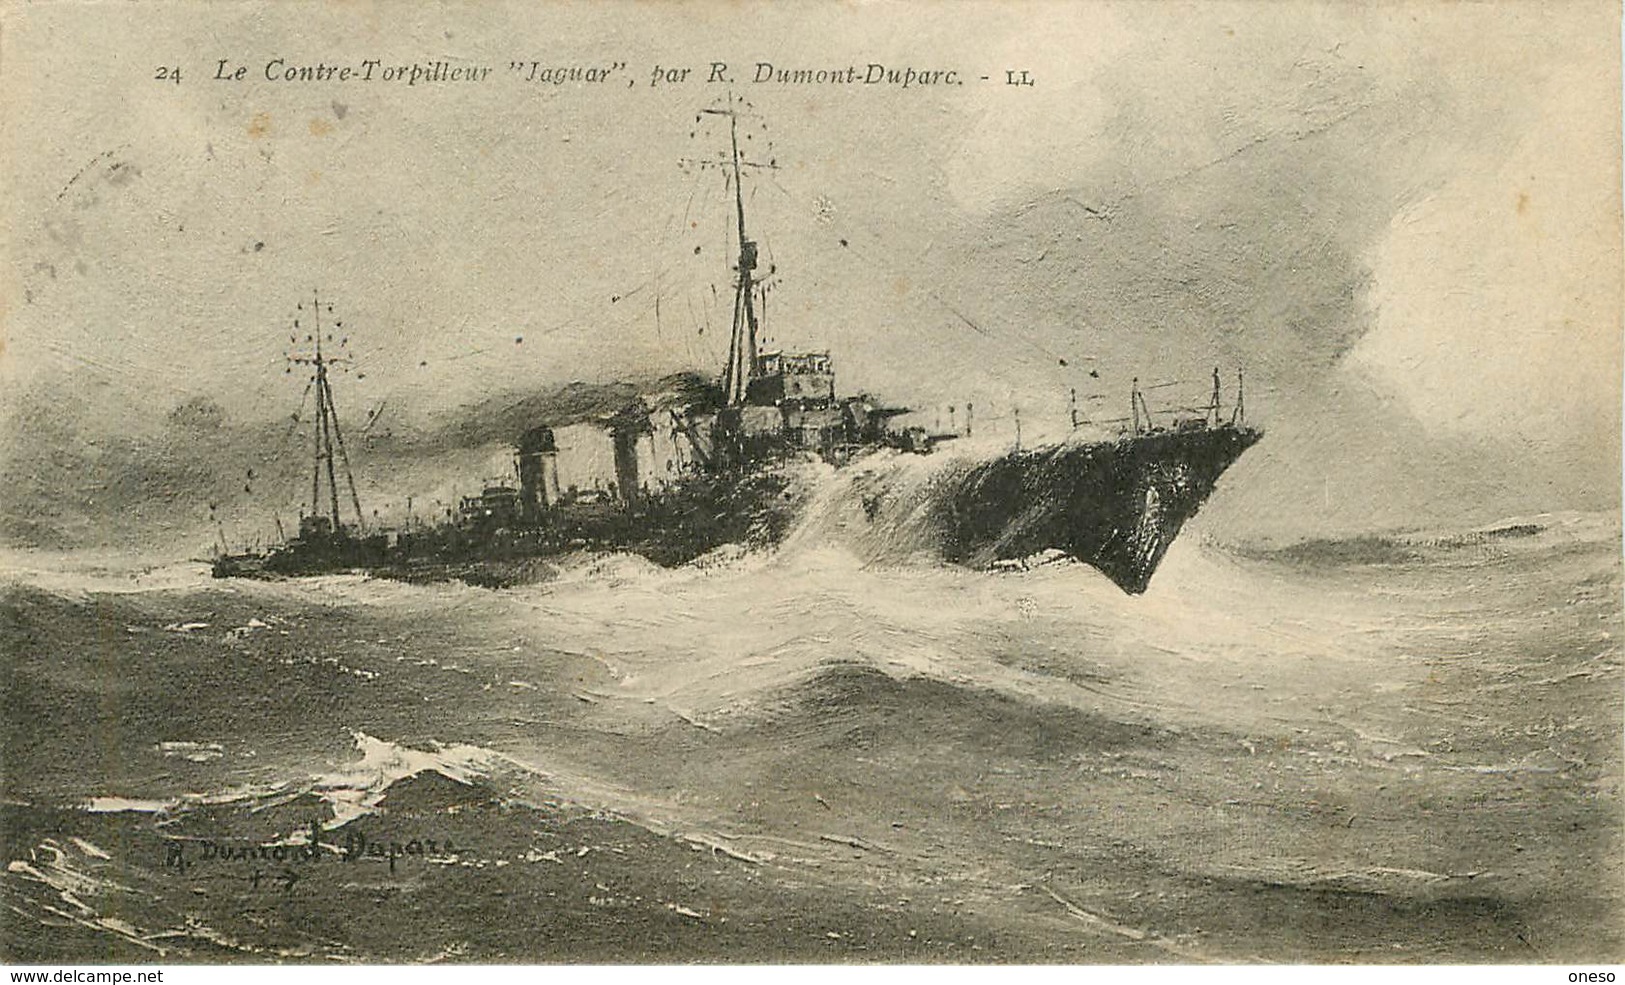 Thèmes - Lot N°391 - Bateau - Navires - Cartes sur le thème des bateaux de guerre - Lots en vrac - Lot de 120 cartes